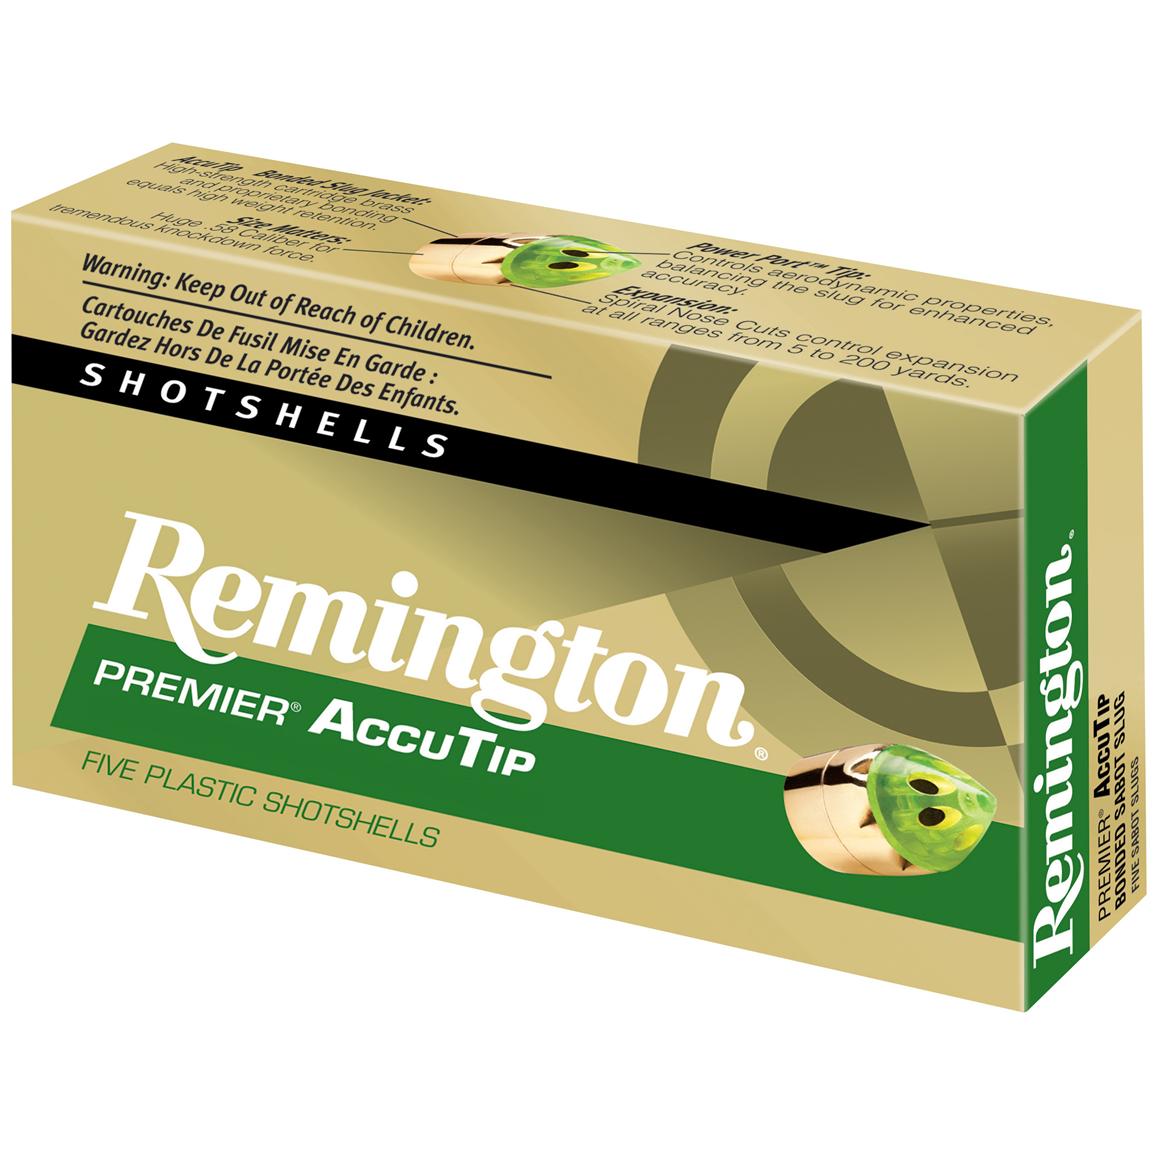 Remington Premier 20 Gauge 3" AccuTip Bonded Sabot Slugs, 5 rounds